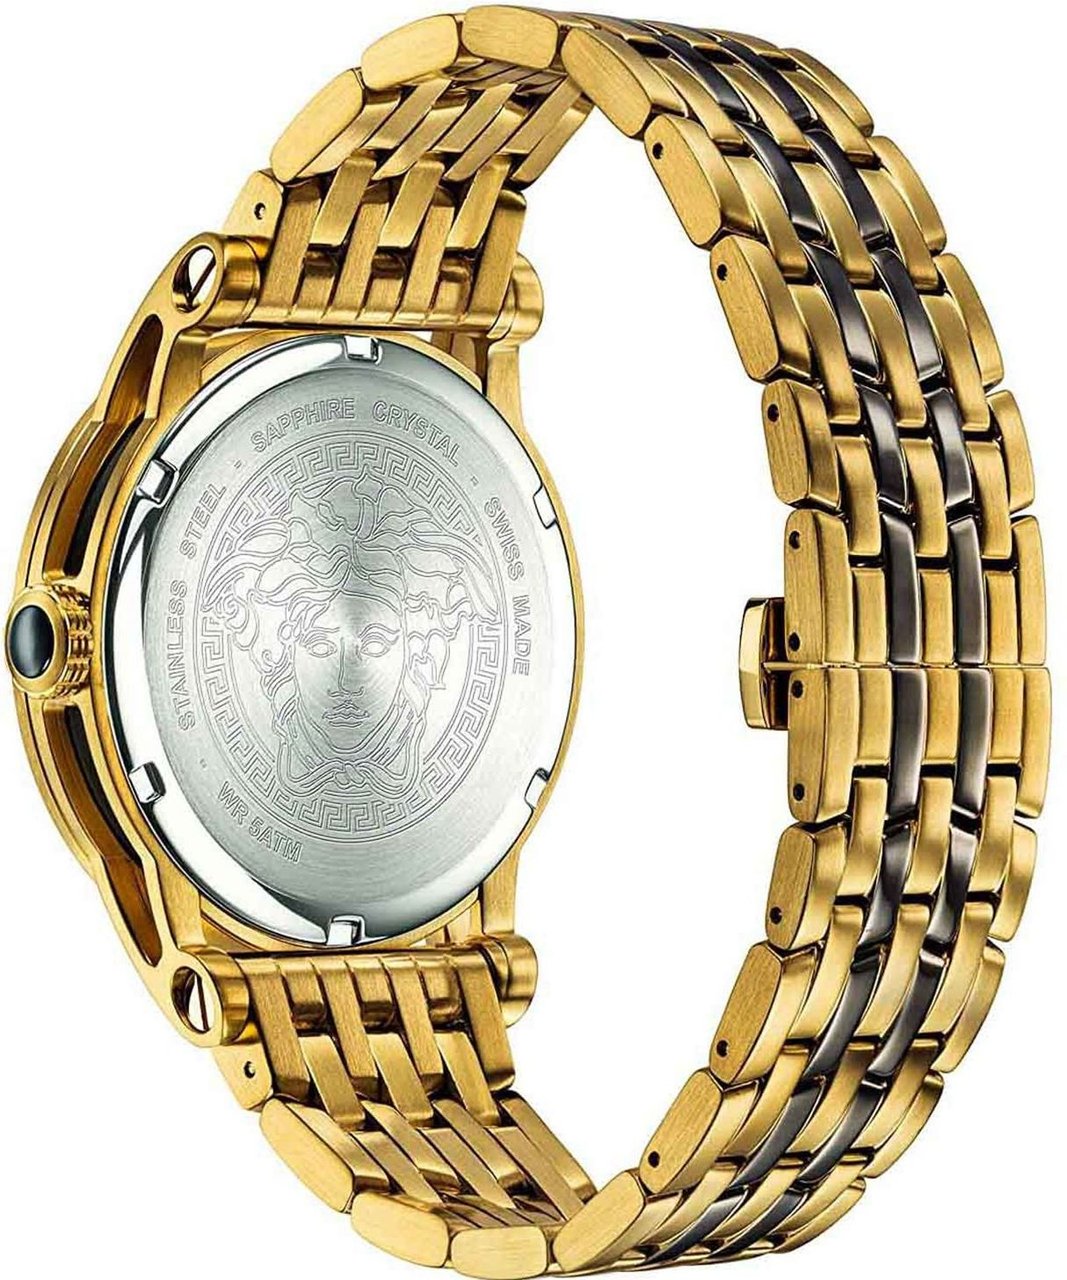 Versace VERD00418 Palazzo heren horloge 43 mm Zilver